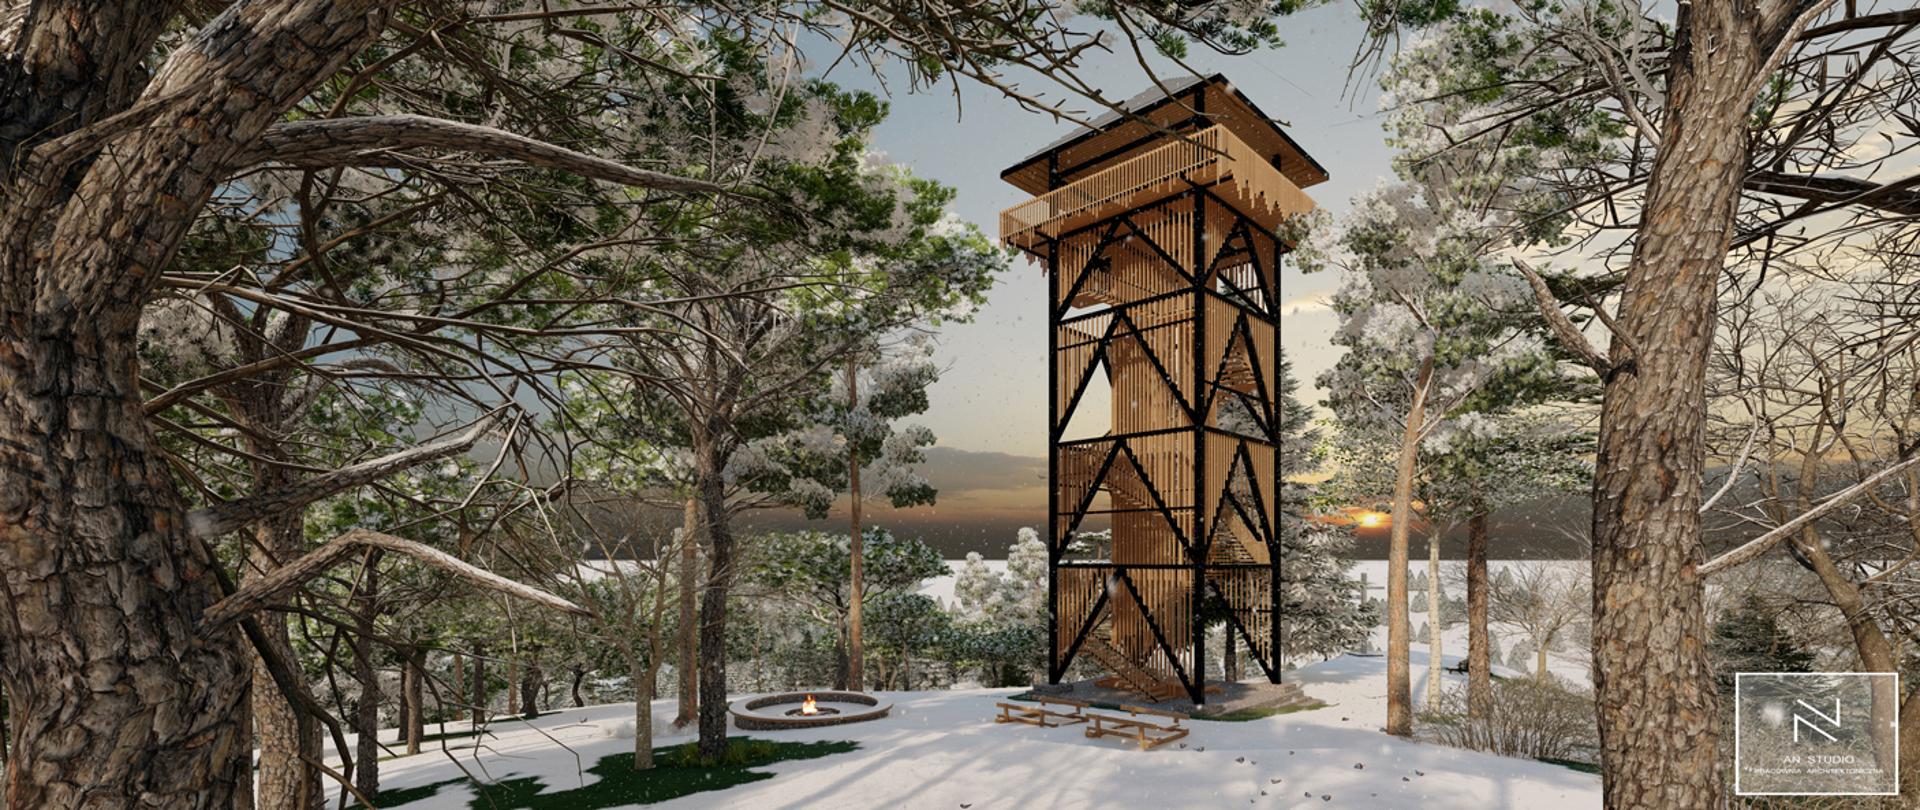 Na zdjęciu znajduje się wizualizacja wieży widokowej. Na pierwszym planie wizualizacji znajdują się drzewa, pokryte śniegiem. W niedalekim tle znajduje się wieża, które konstrukcja przypomina wąski, drewniany blok z dachem. Panuje zimowa aura. 